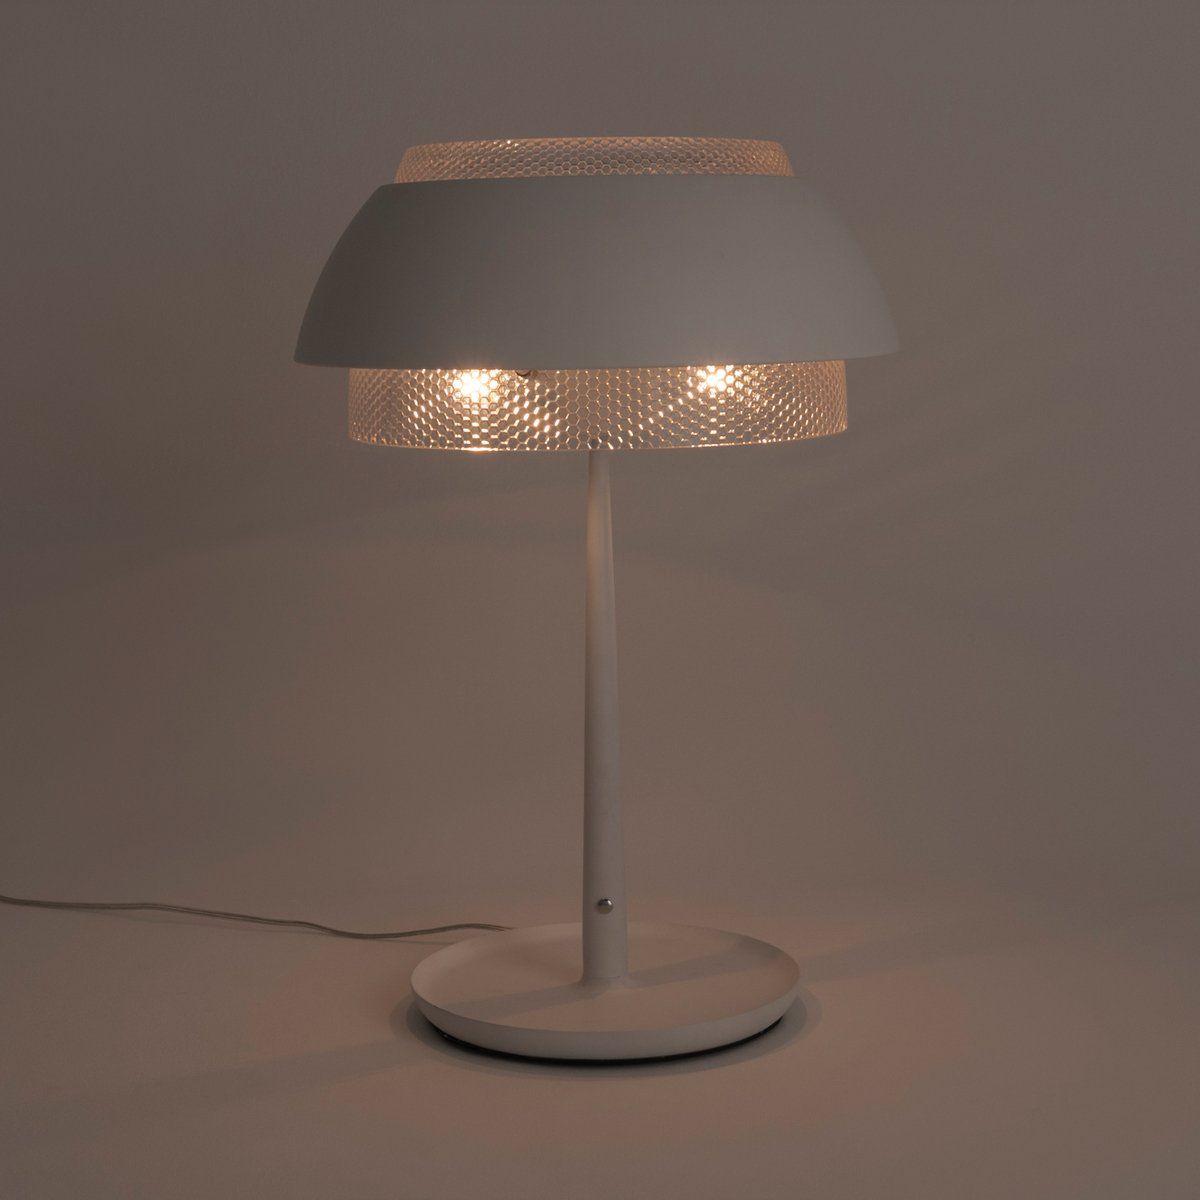 Lampe touch design LOUISE blanc mat en métal et verre